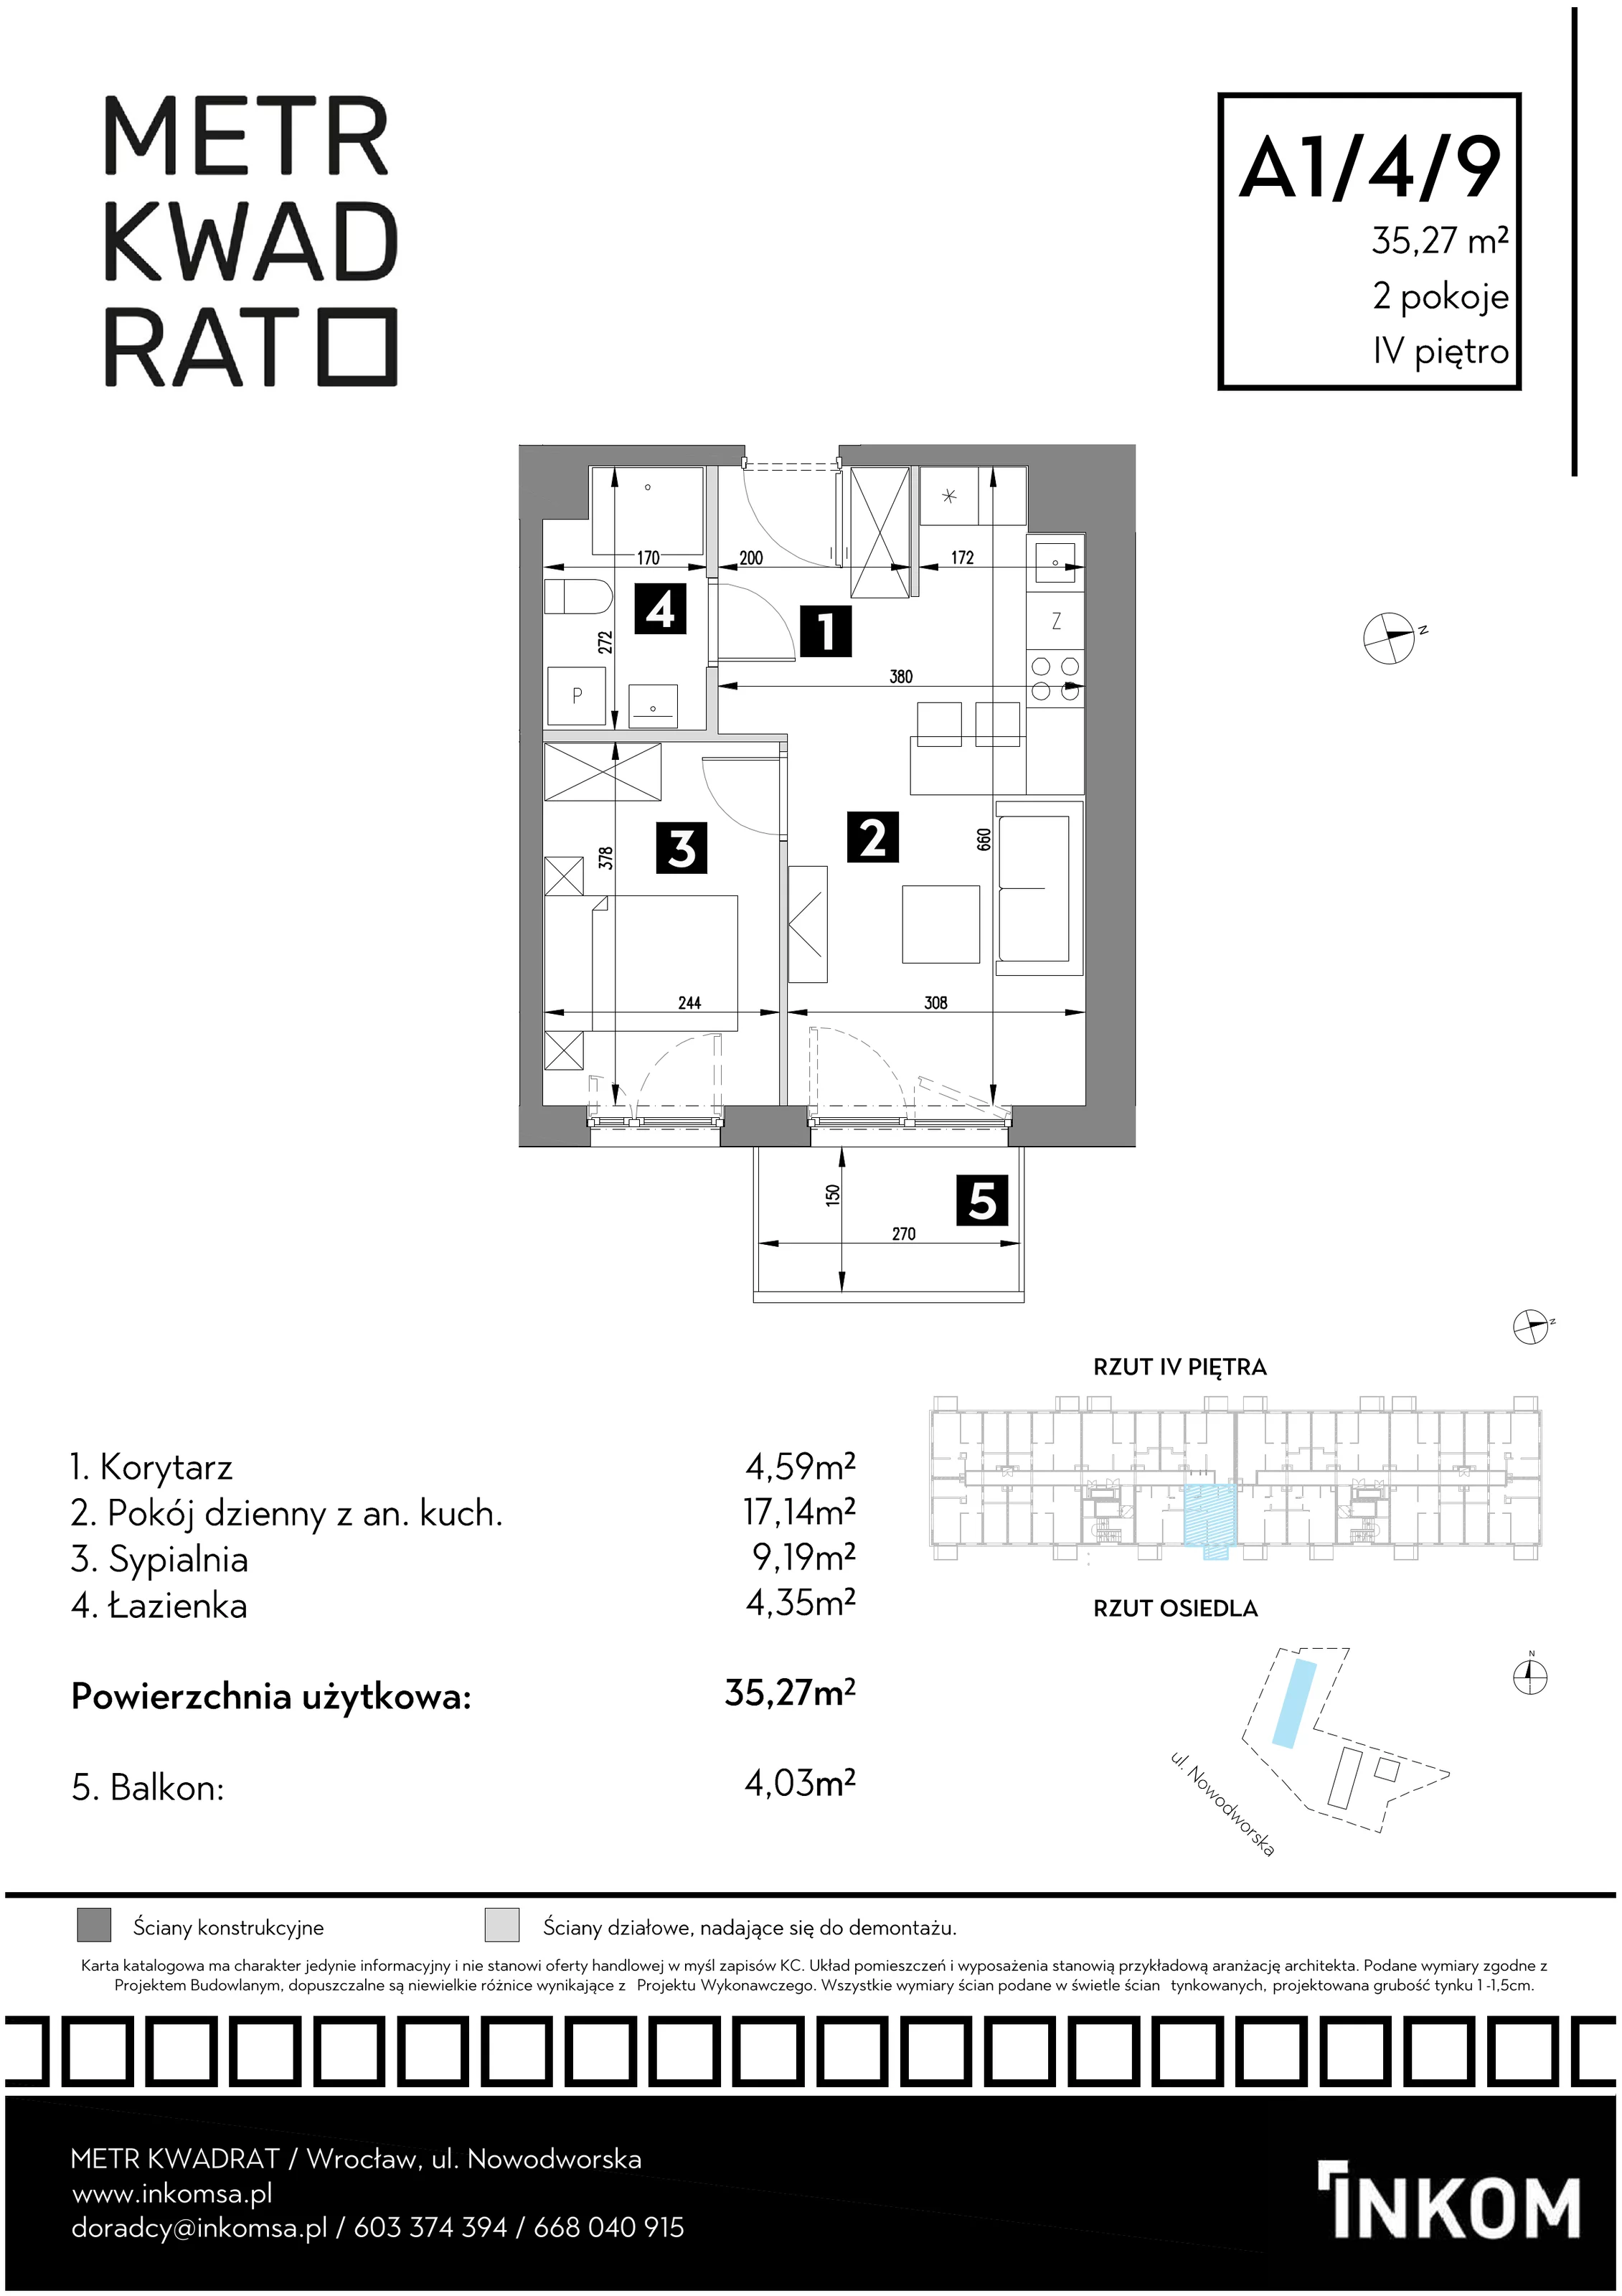 Mieszkanie 35,27 m², piętro 4, oferta nr A1/4/9, Metr Kwadrat, Wrocław, Nowy Dwór, ul. Nowodworska 17B